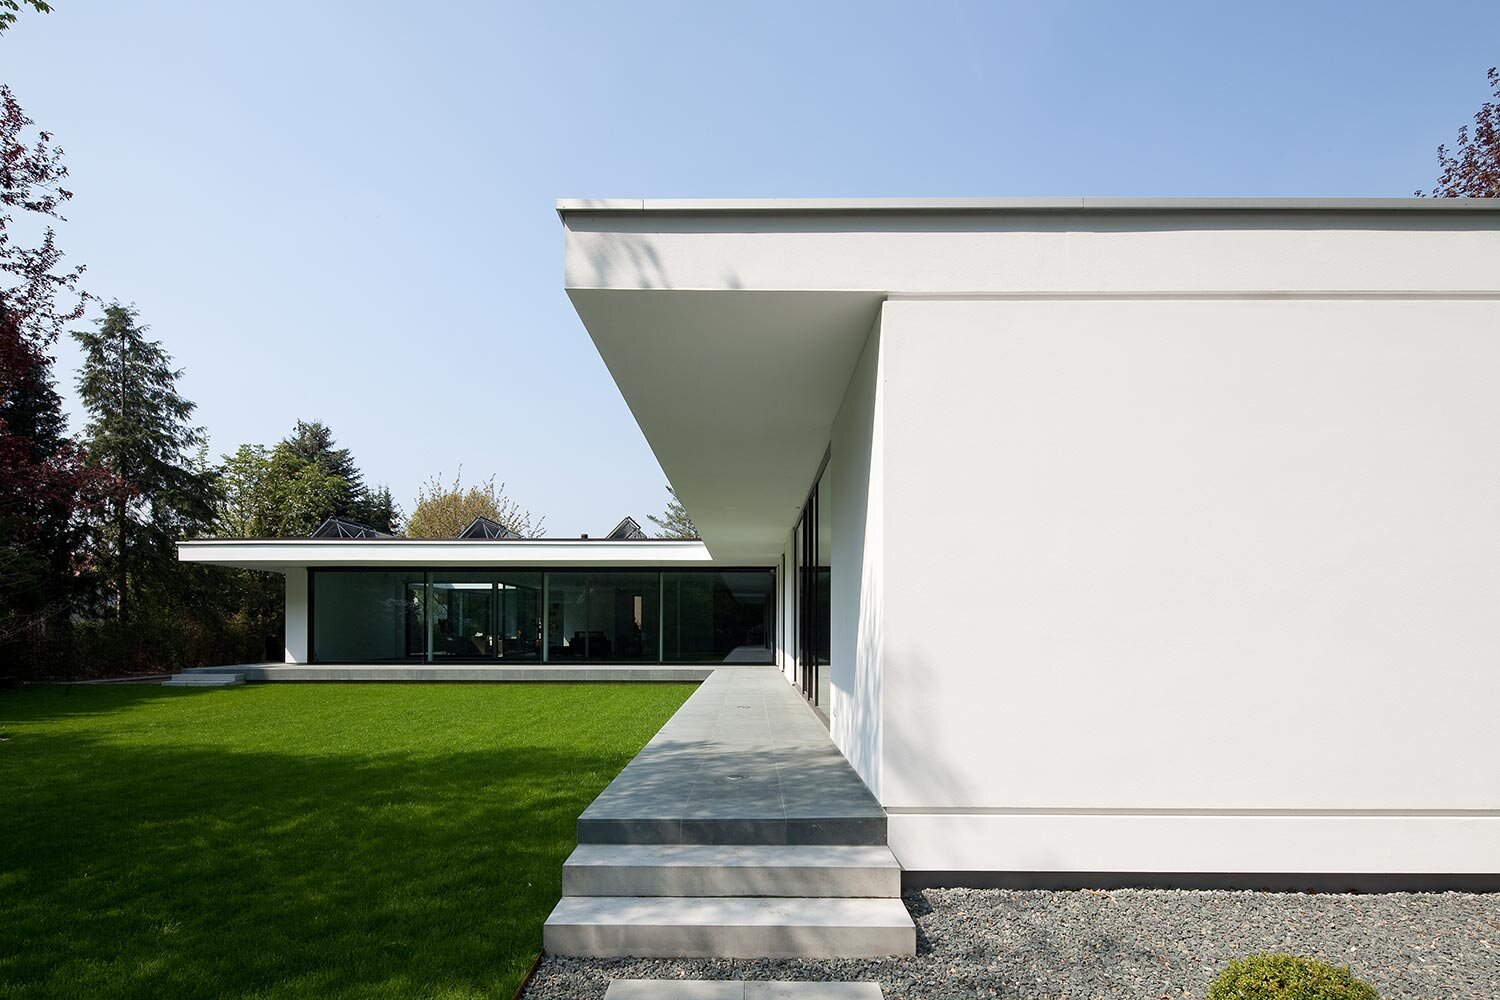 04_ht_architektur_villa_modern_wohnen_muenster_terrasse_garten_putz.jpg